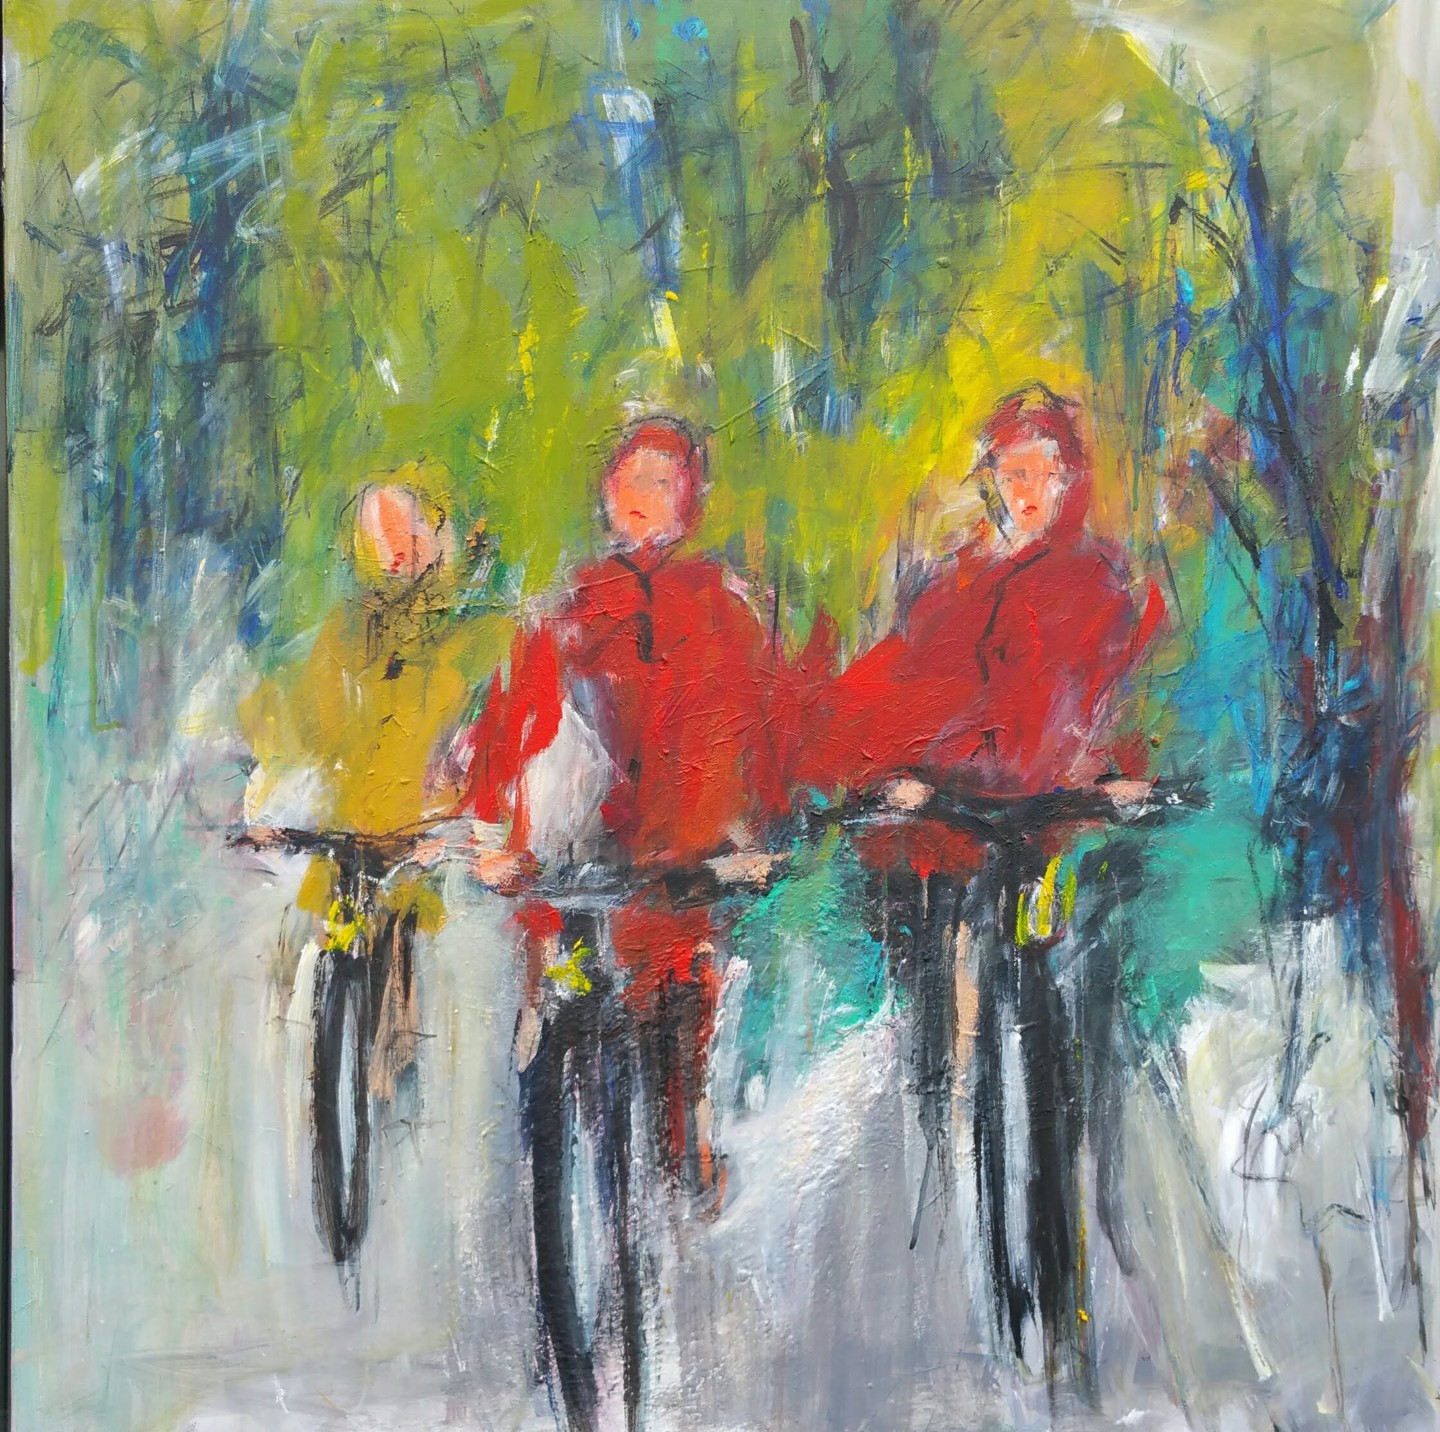 à bicyclette peinture artistique